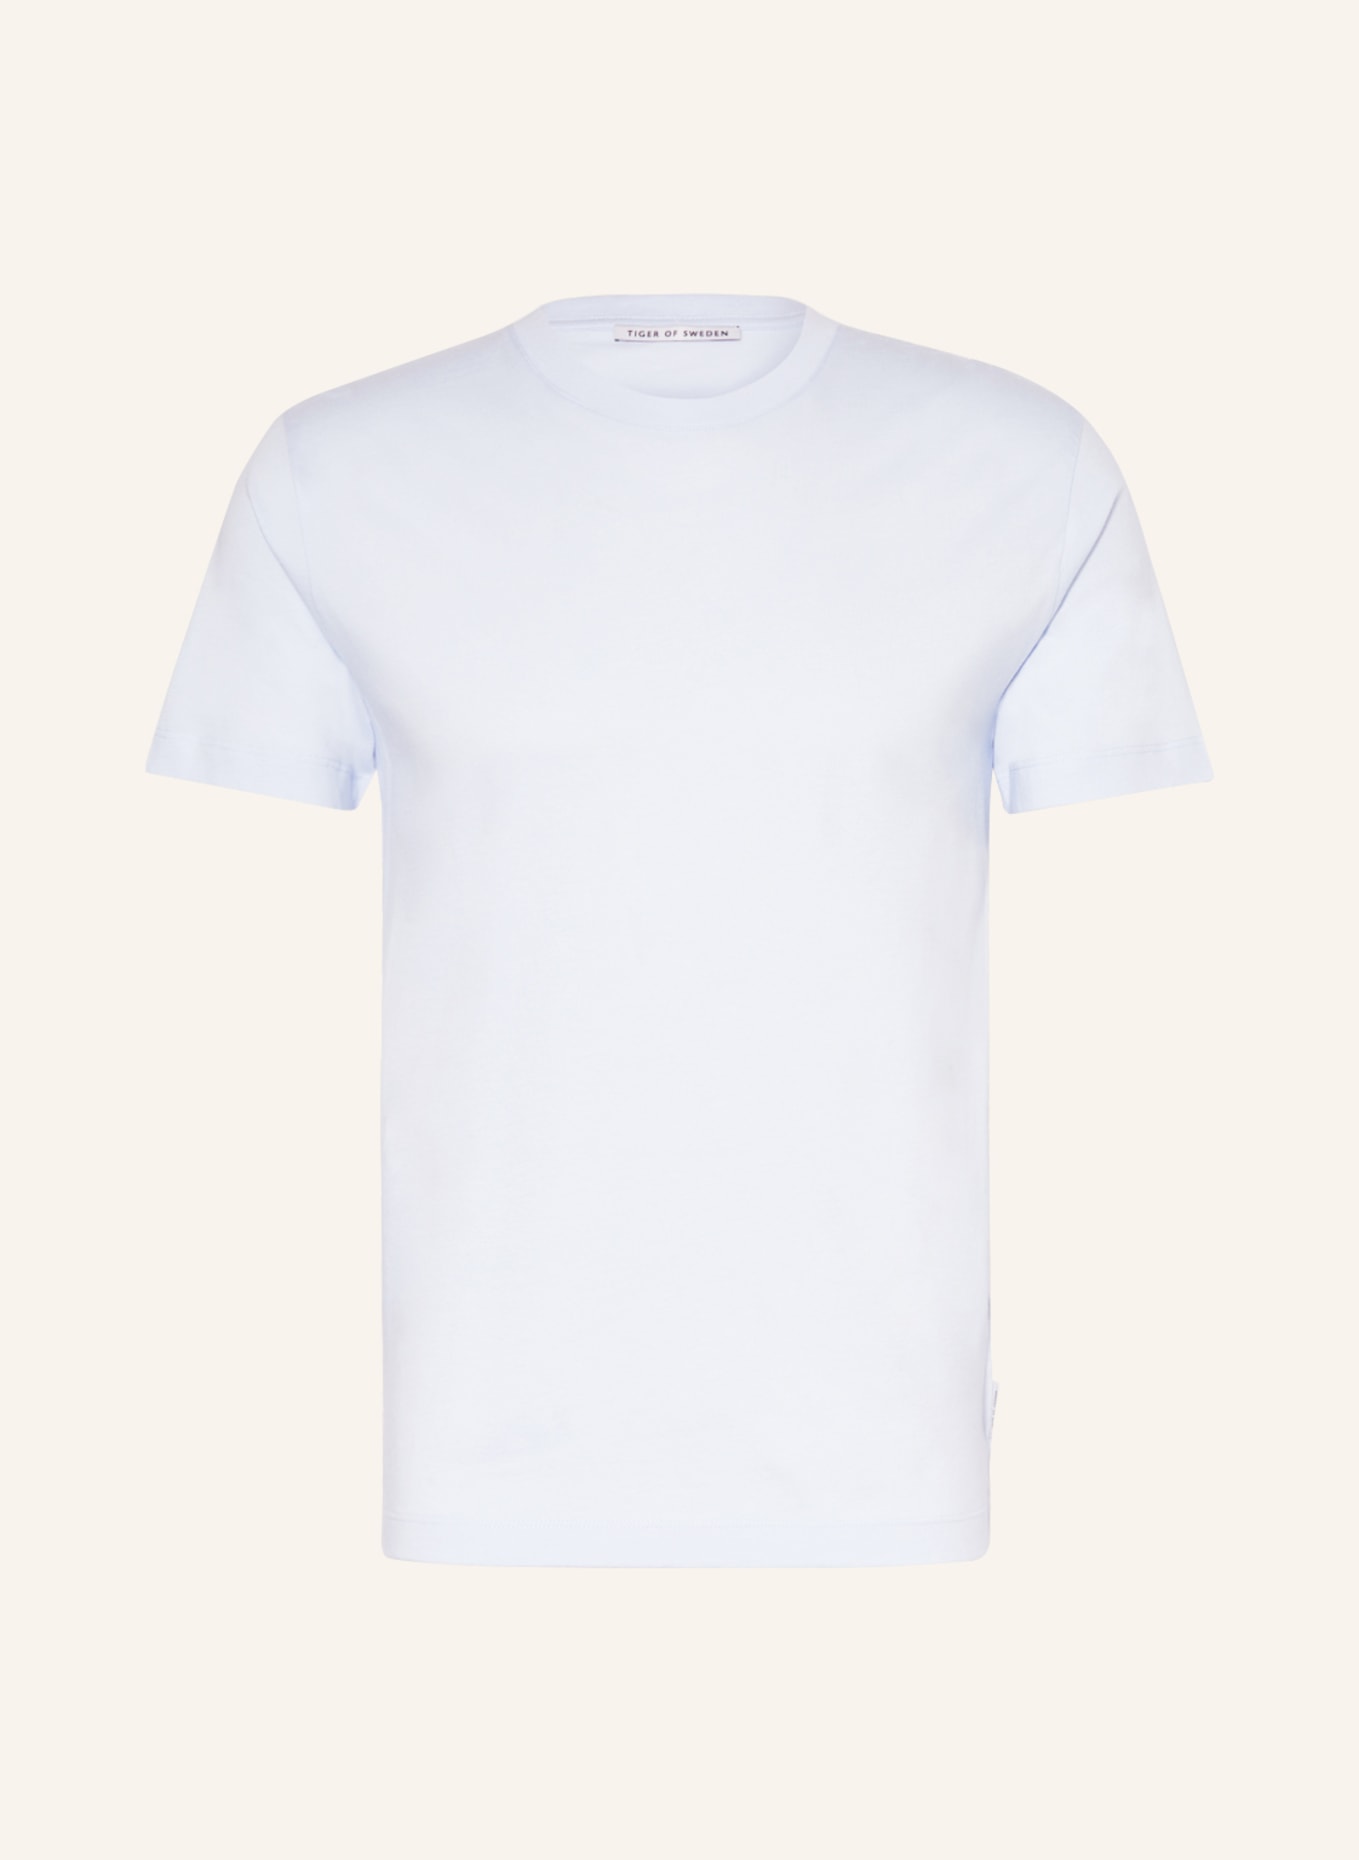 TIGER OF SWEDEN T-shirt DILLAN, Color: LIGHT BLUE (Image 1)